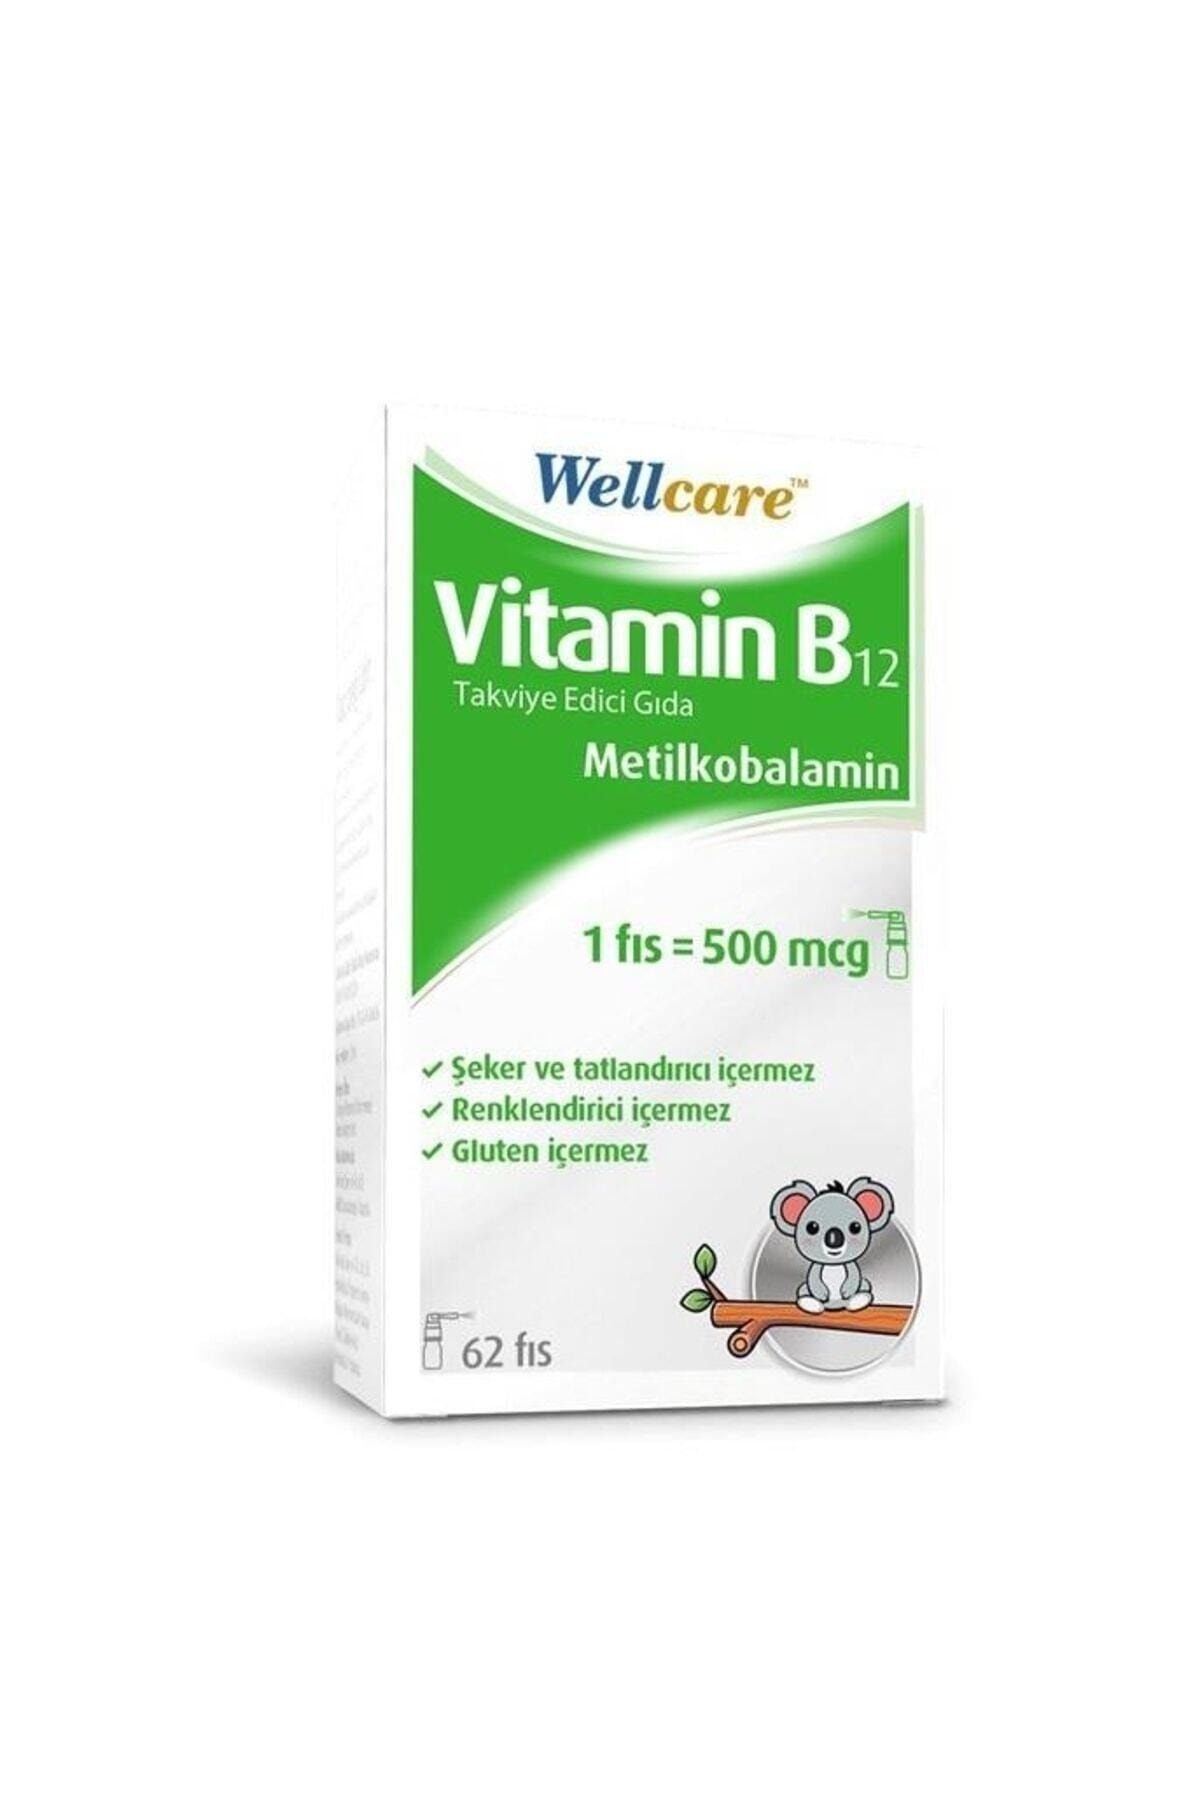 Wellcare Vitamin B12 Metilkobalamin 500 Mcg Dil Altı Sprey 5 ml